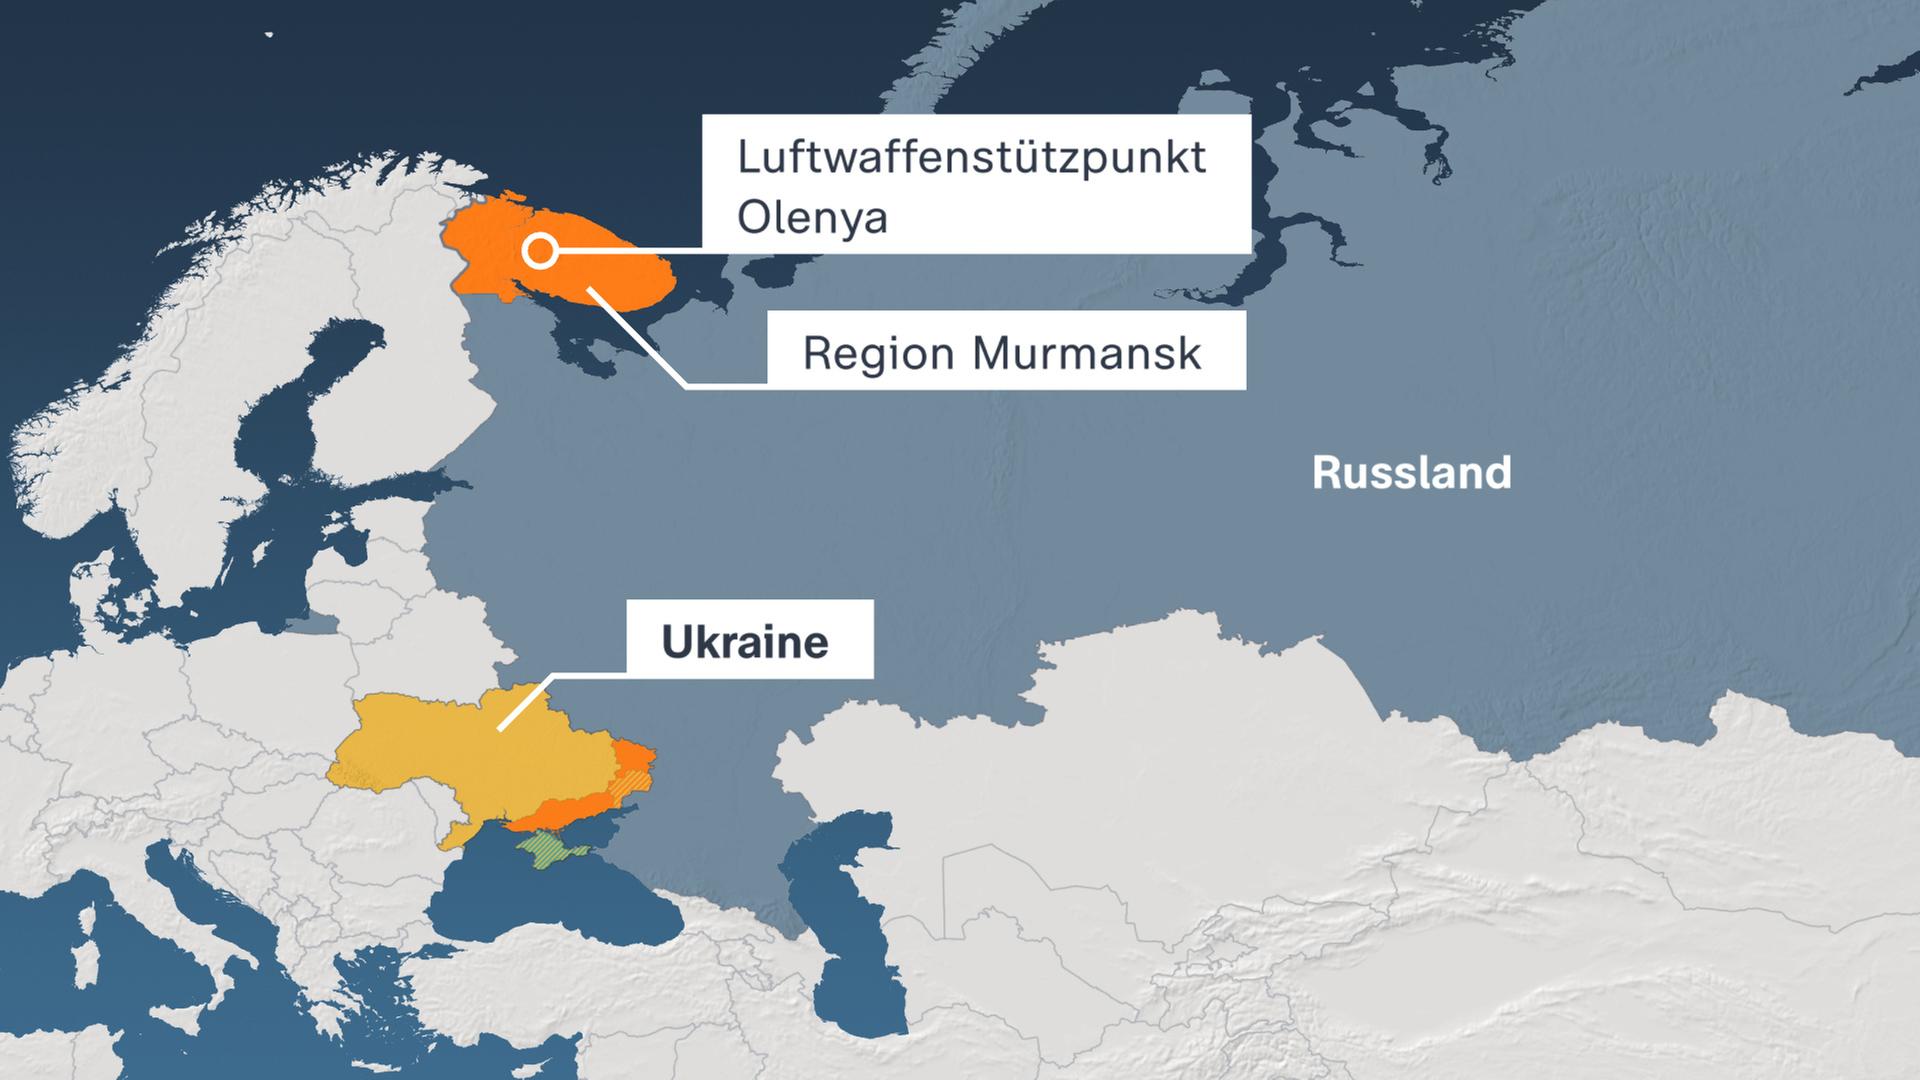 Karte der Ukraine und Russland sowie dem russischen Luftwaffenstützpunkt Olenya in der Region Murmansk